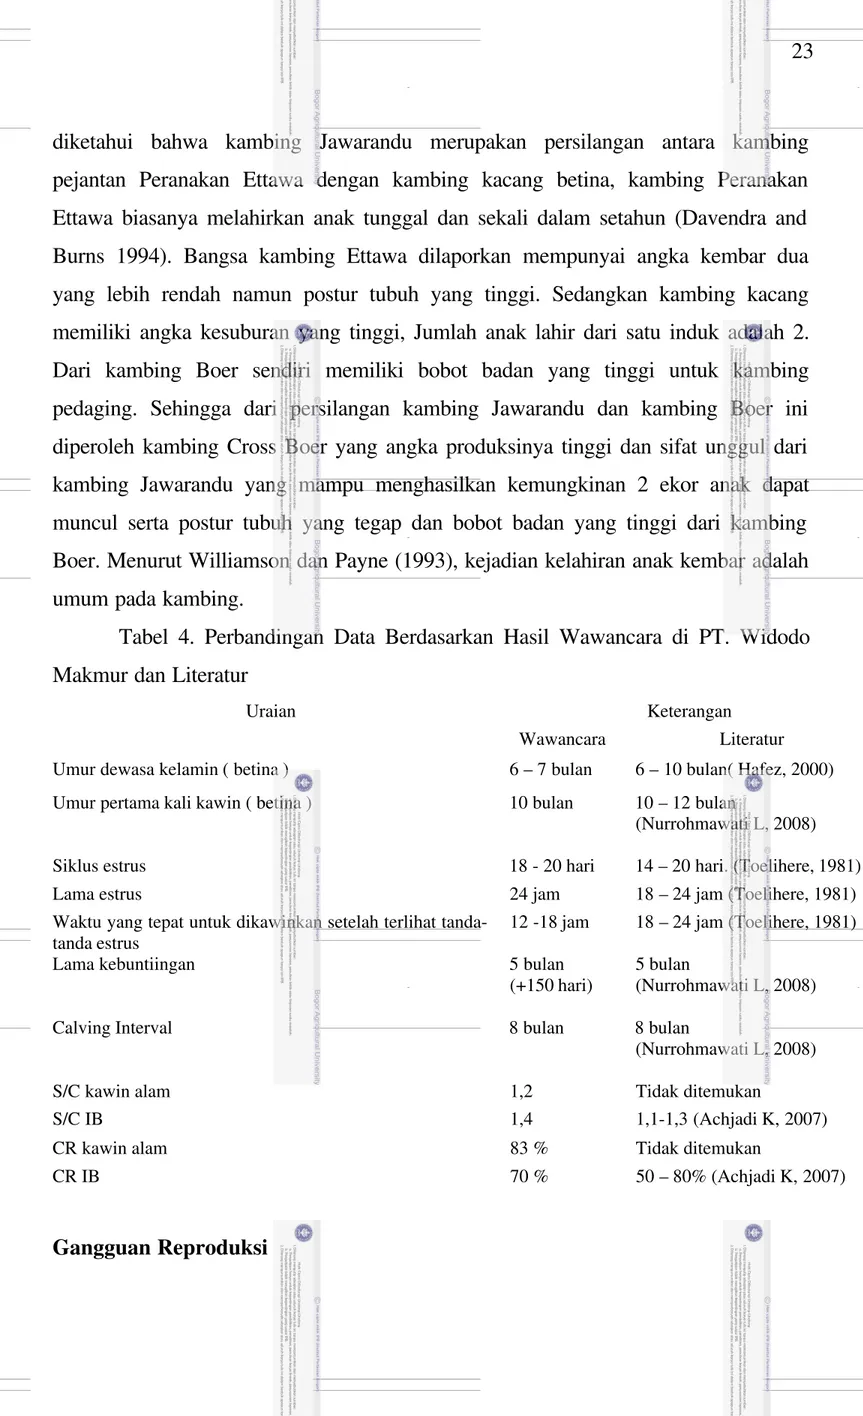 Tabel  4.  Perbandingan  Data  Berdasarkan  Hasil  Wawancara  di  PT.  Widodo Makmur dan Literatur